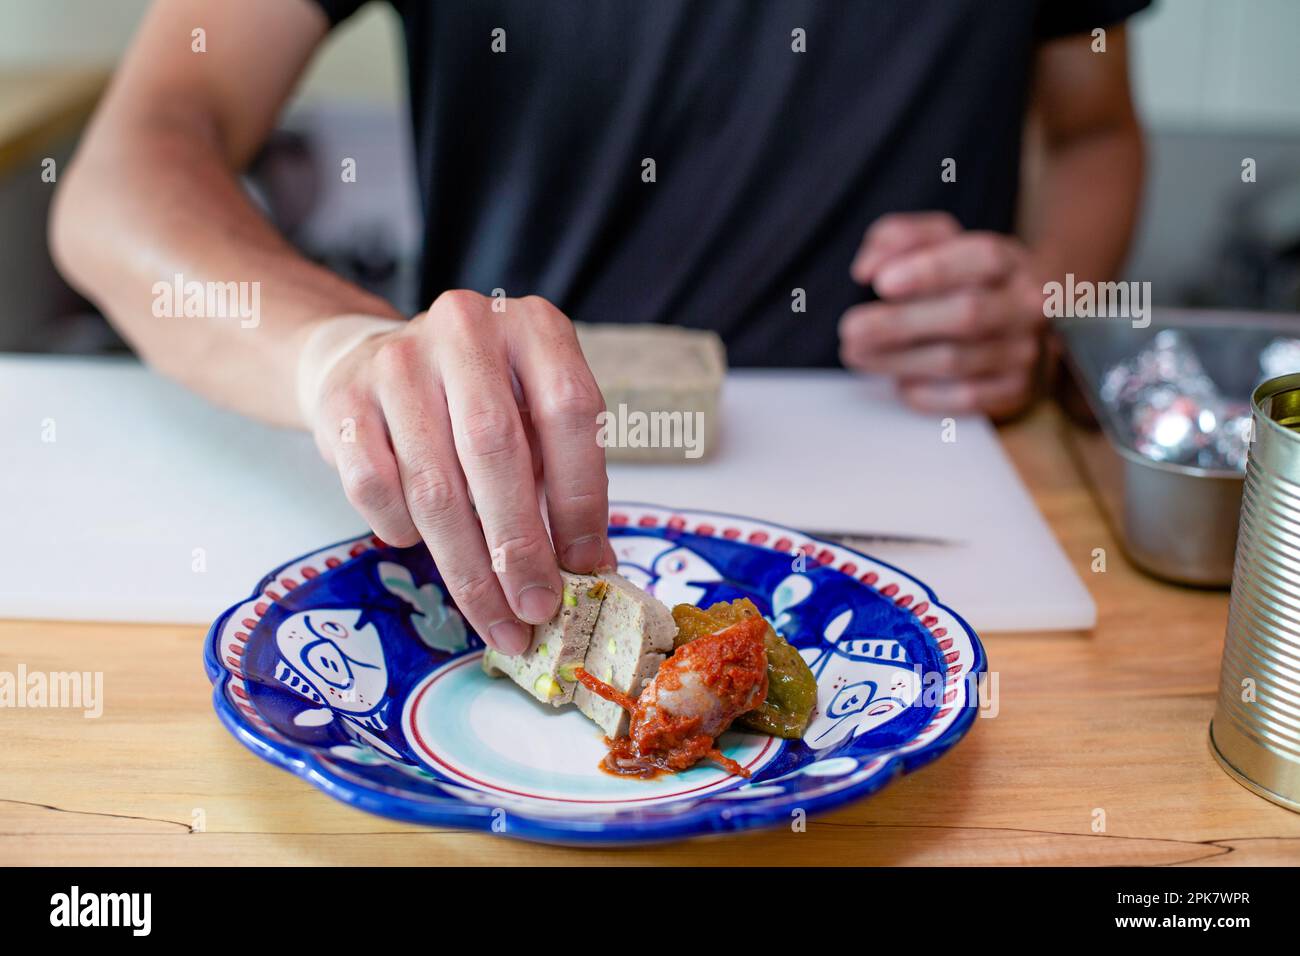 Ein Mann, der in einem Restaurant Essen zubereitet, Gemüse und Pastete auf einen Teller stellt. Schließen. Stockfoto